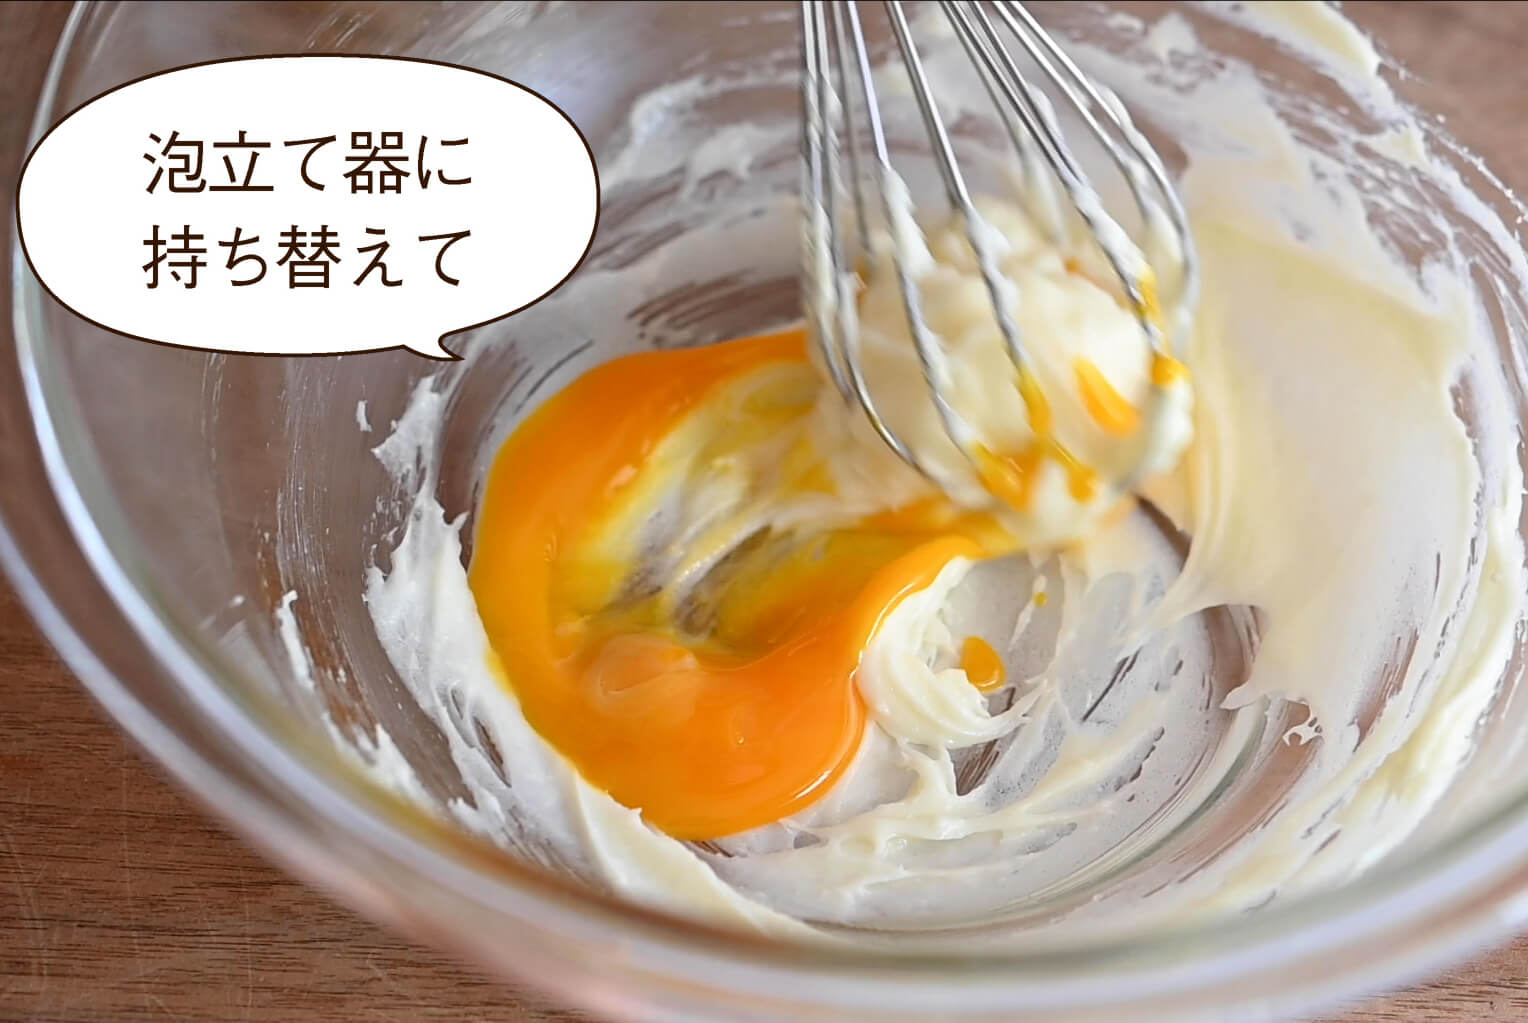 泡立て器に持ち替えて 柔らかく練ったクリームチーズに卵黄をよく混ぜ合わせる